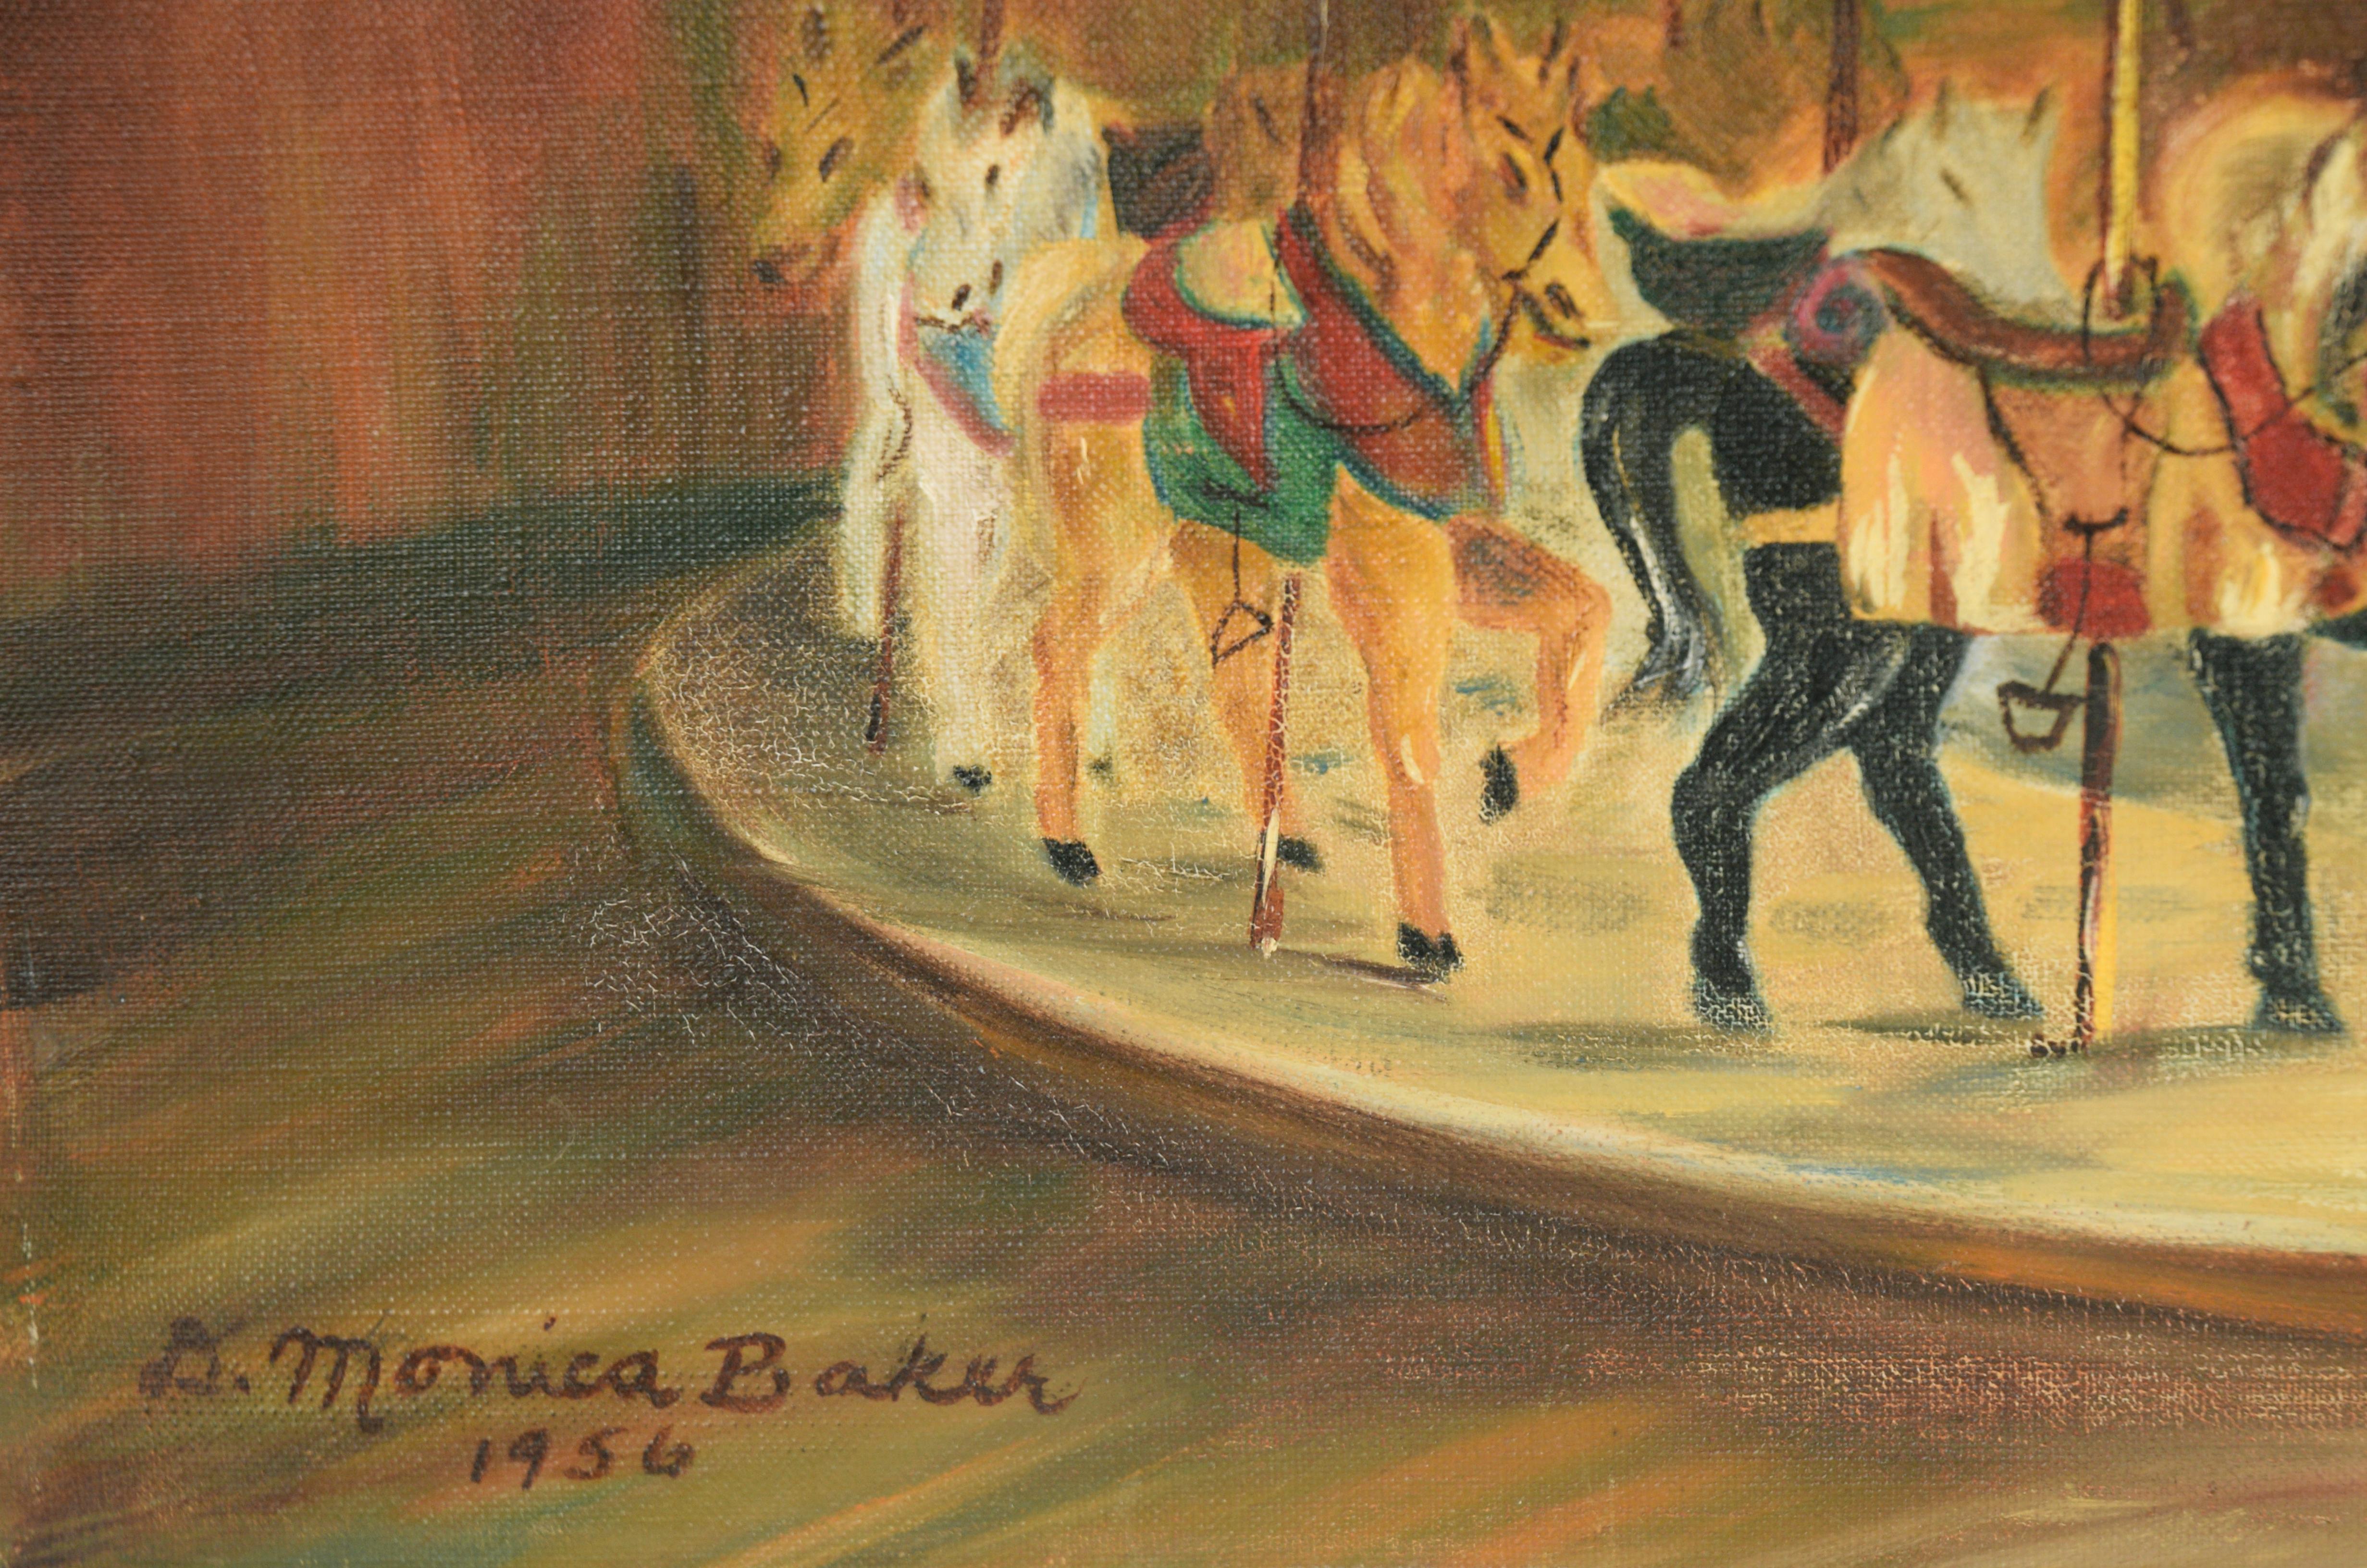 White Horse Carousel, 1956 - Original Oil Painting On Linen For Sale 4